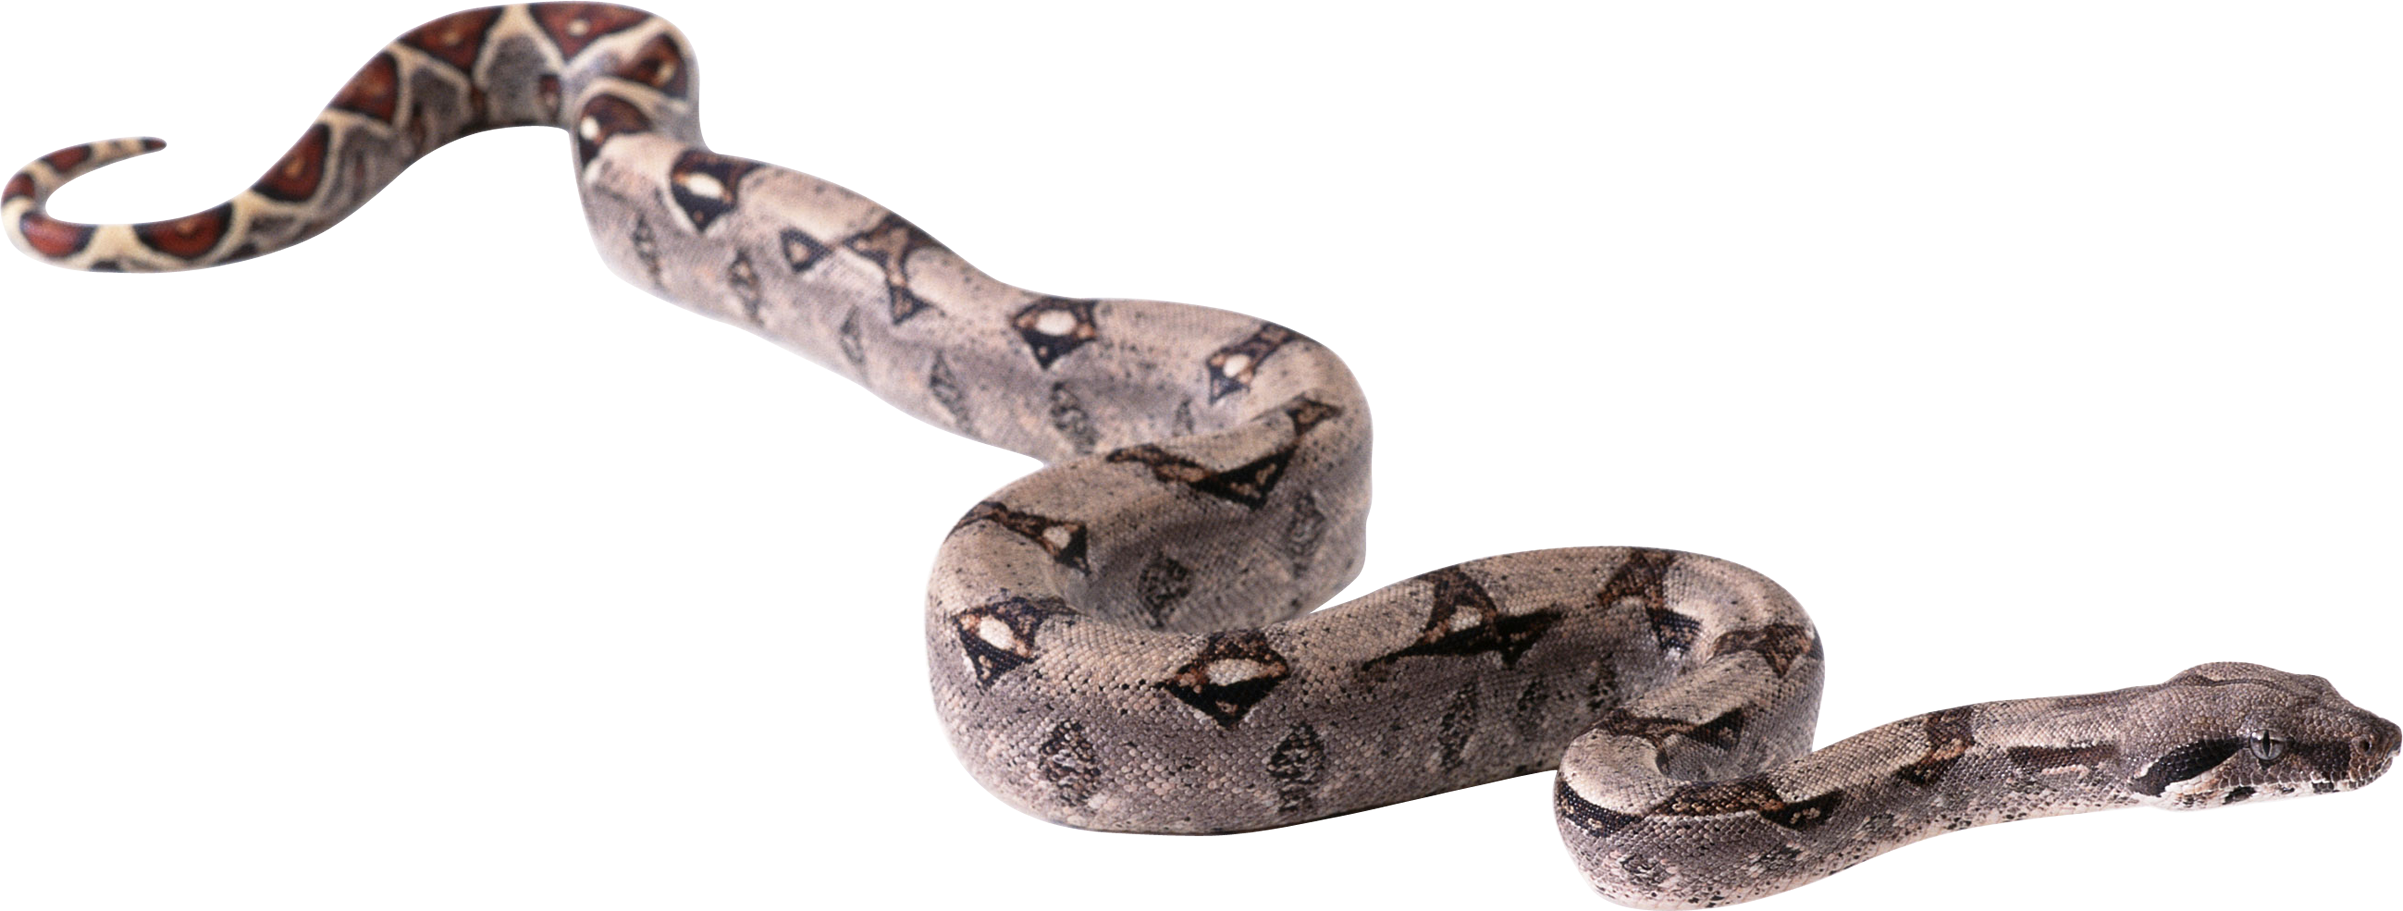 Snake boa constrictor